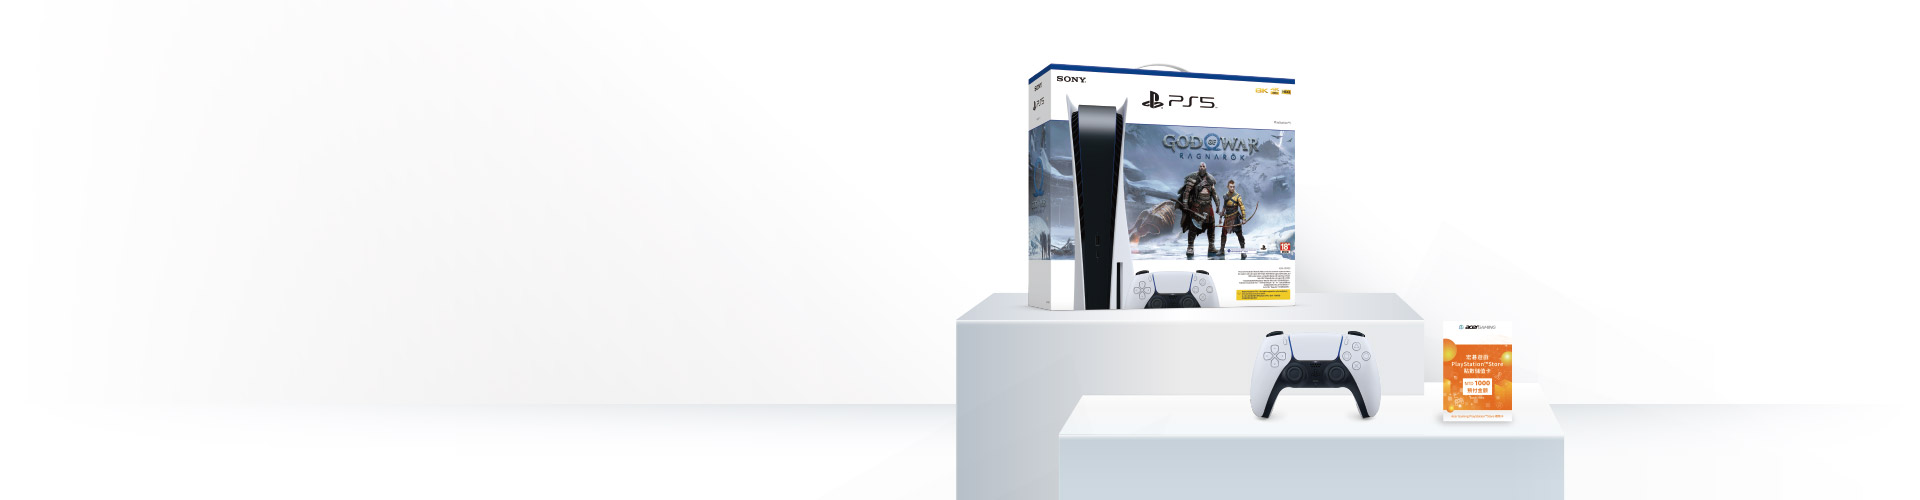 PlayStation® 5 次世代的嶄新體驗 遠傳門市 活動熱烈開跑